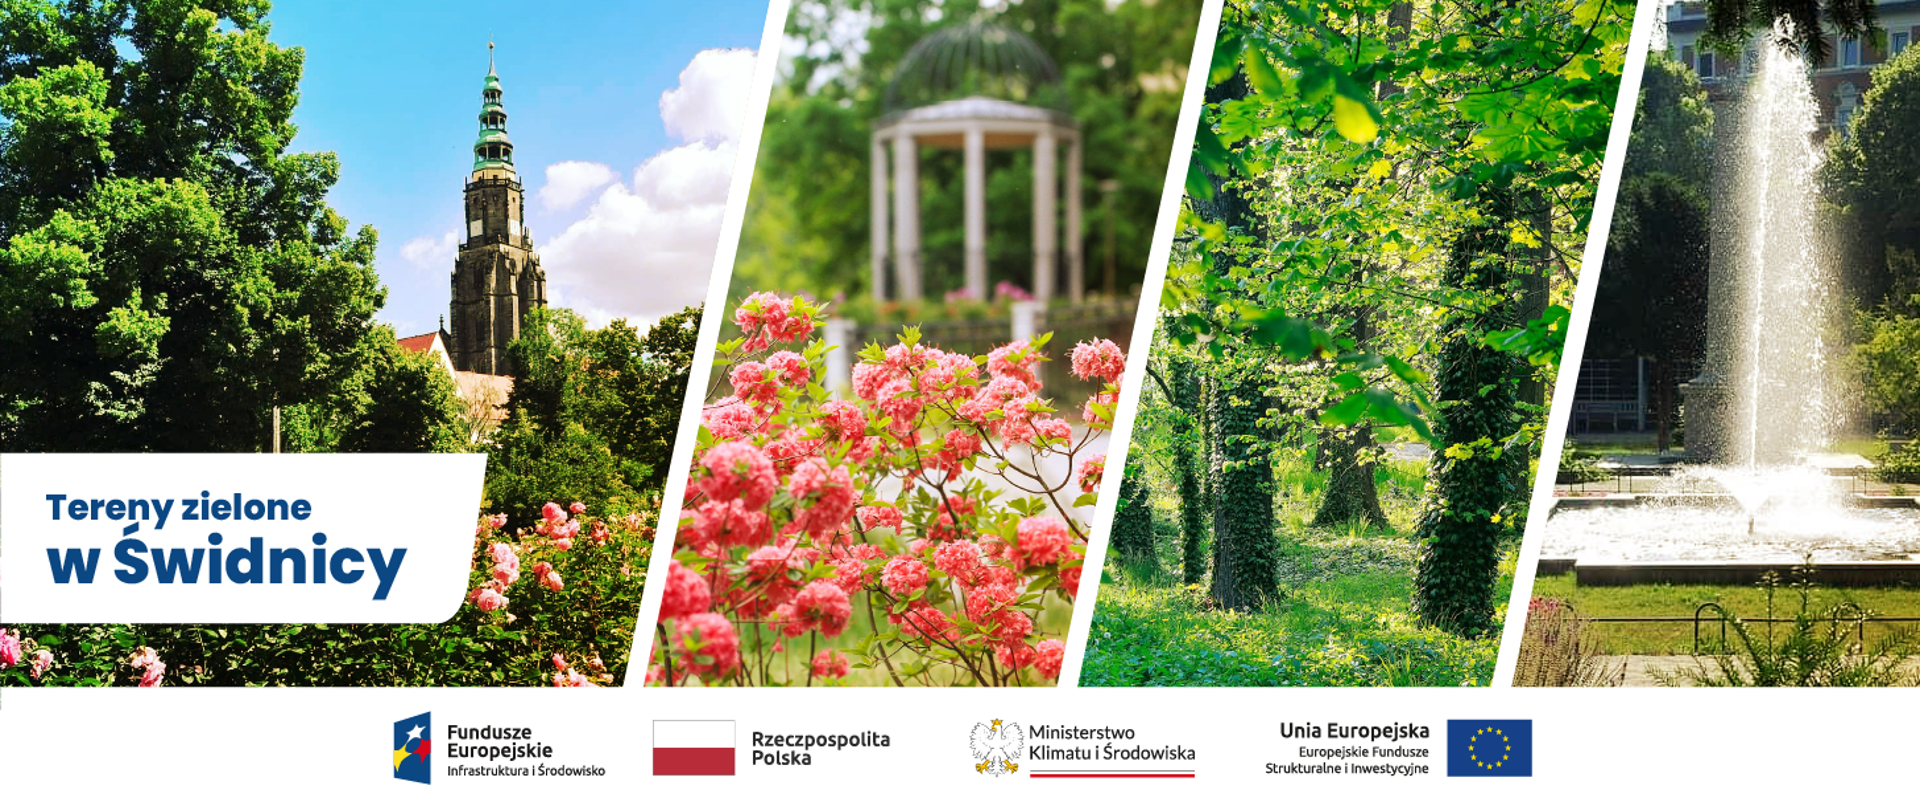 kolaż 4 zdjęć: na pierwszym zieleń parkowa i historyczny budynek, na drugim kwiaty, w oddali pergola, na trzecim zieleń parkowa, na czwartym fontanna w okolicy zieleń parkowa. Na samym dole pod kolażem logo POIS 2014-2020